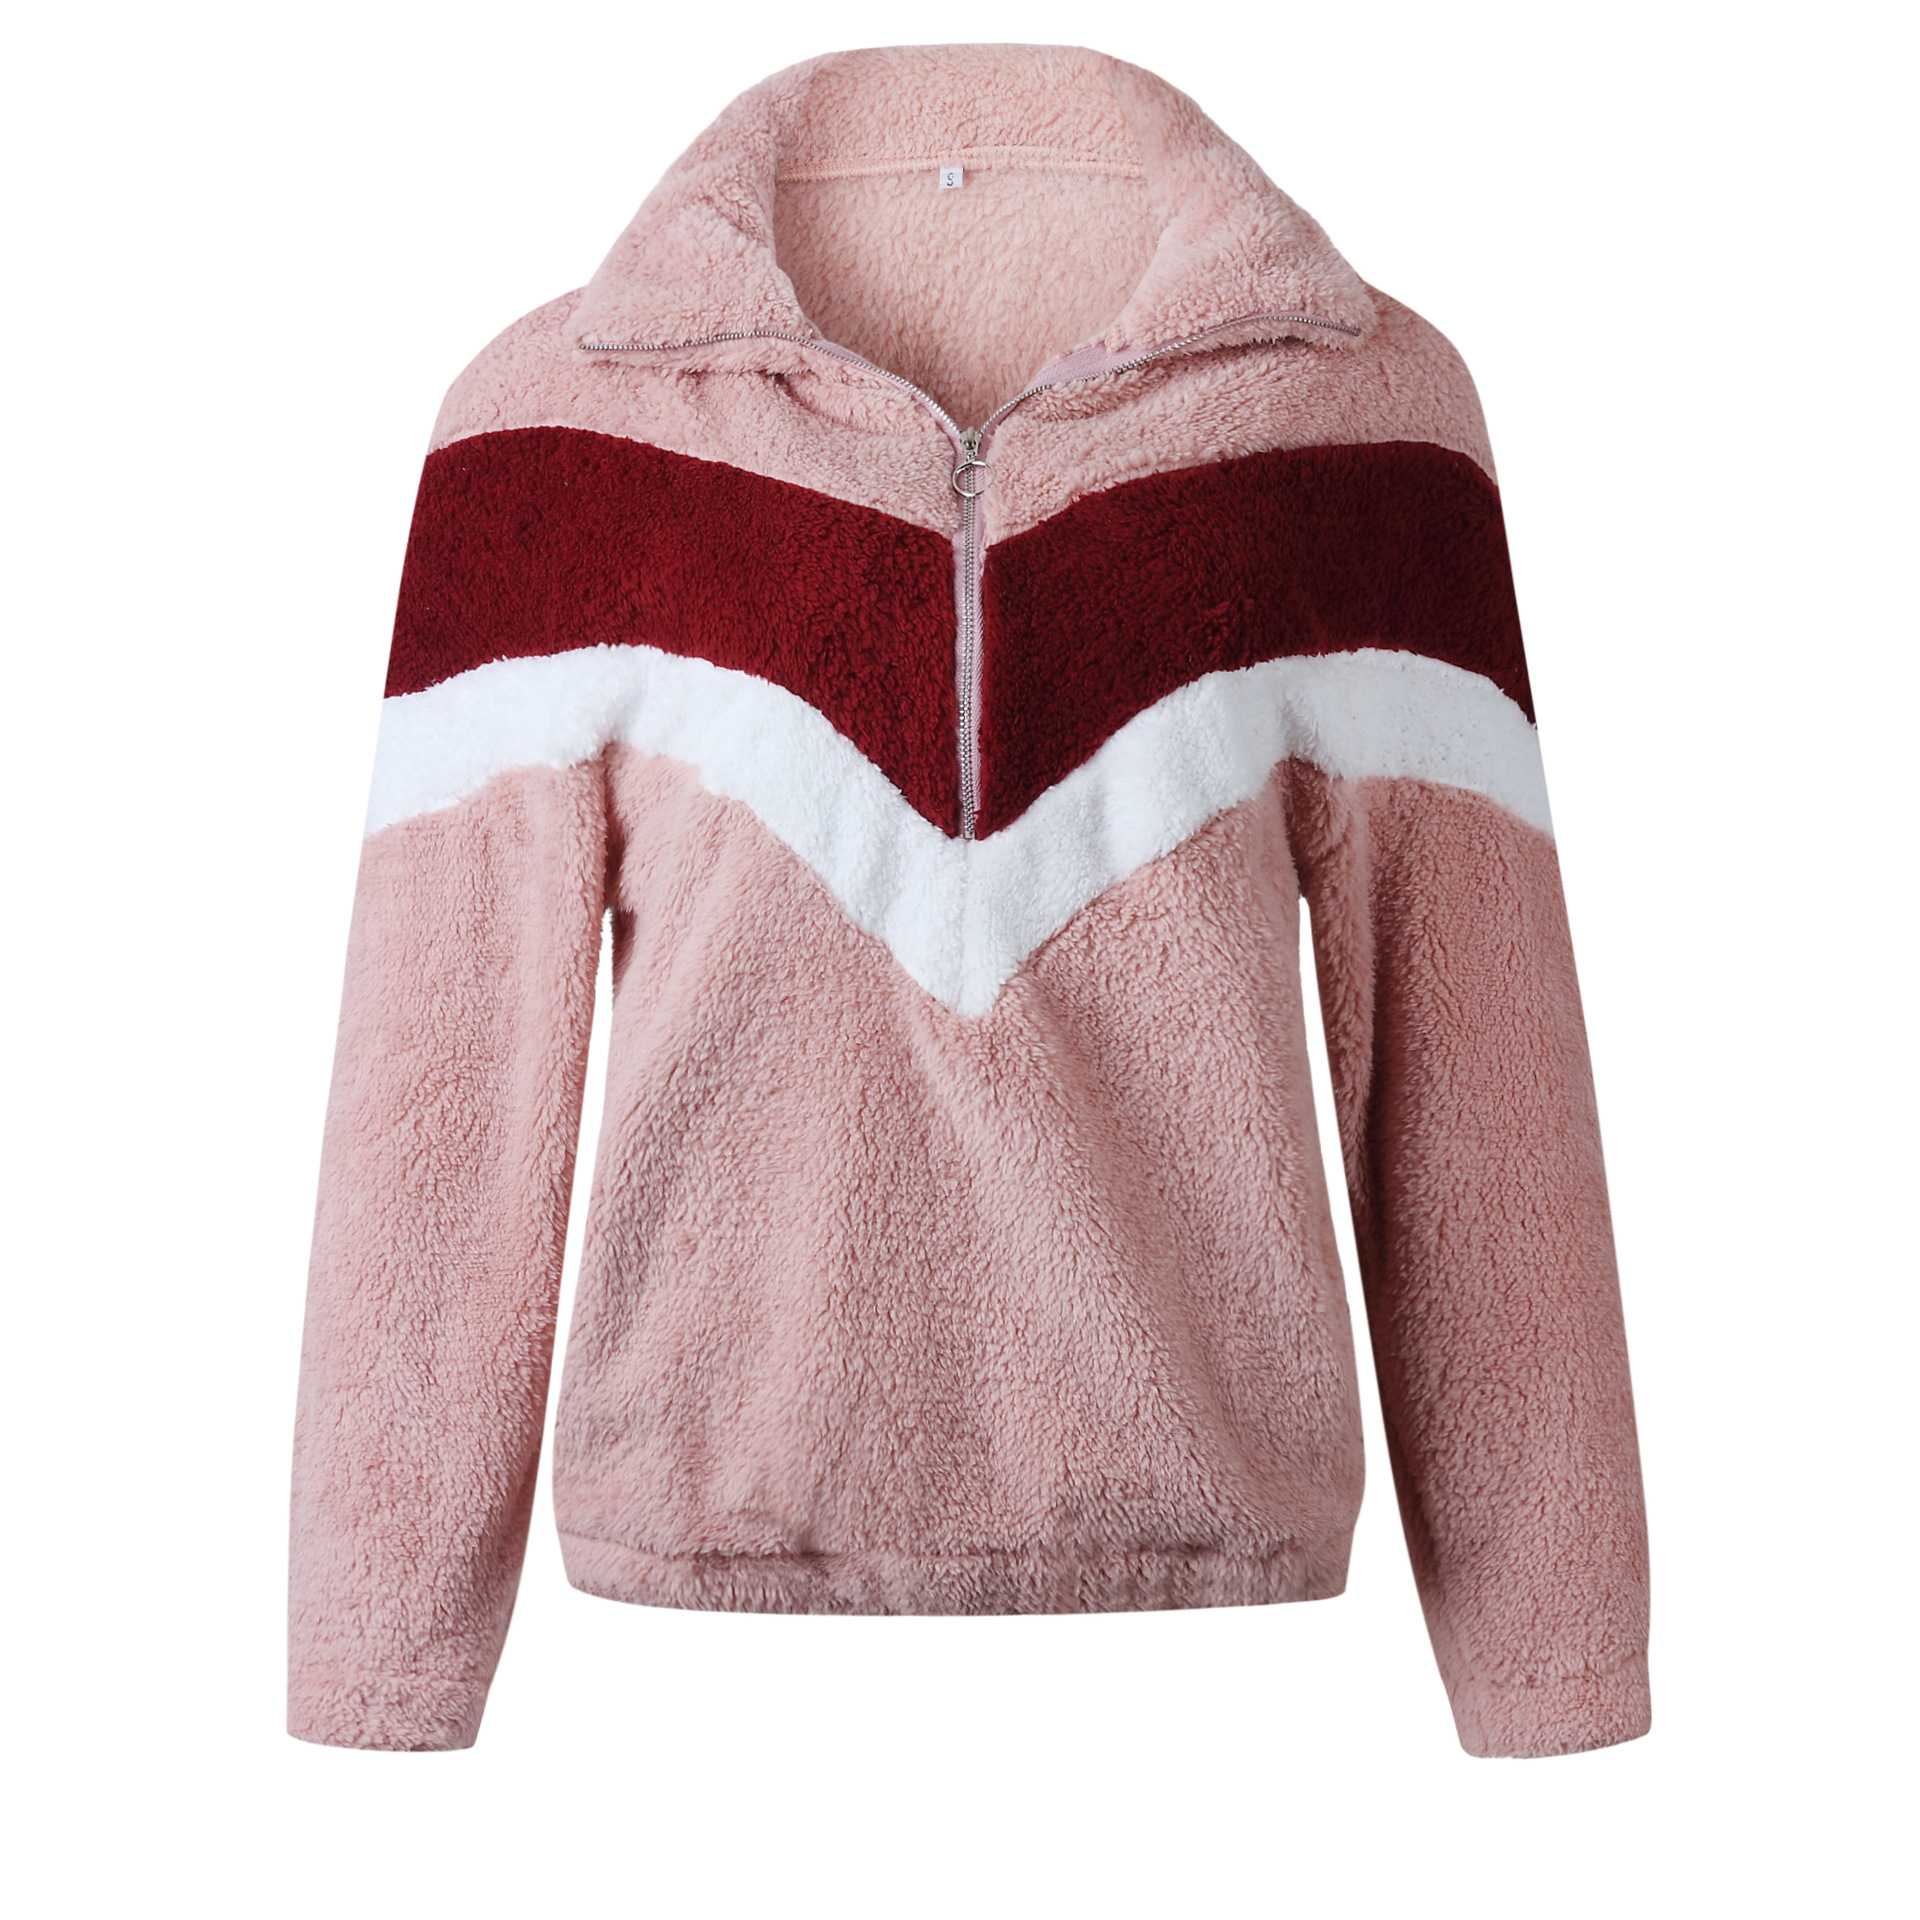 Cozy Colorblock Chevron Half Zip Faux Fur Sweatshirt Sherpa Pullover Jacket